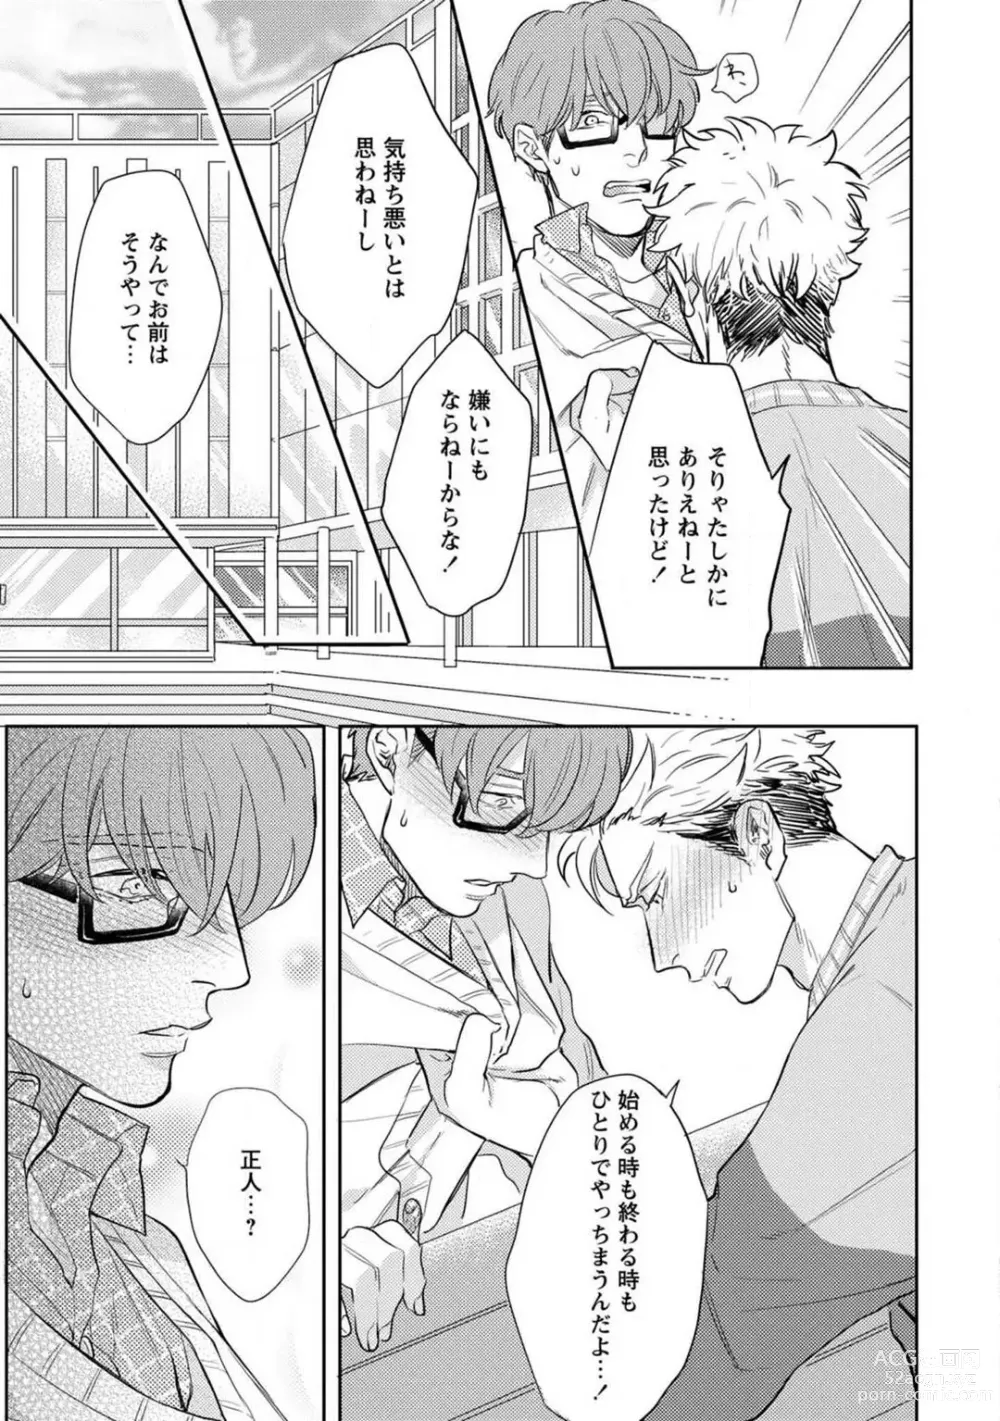 Page 44 of manga Kimi no Shiranai xx